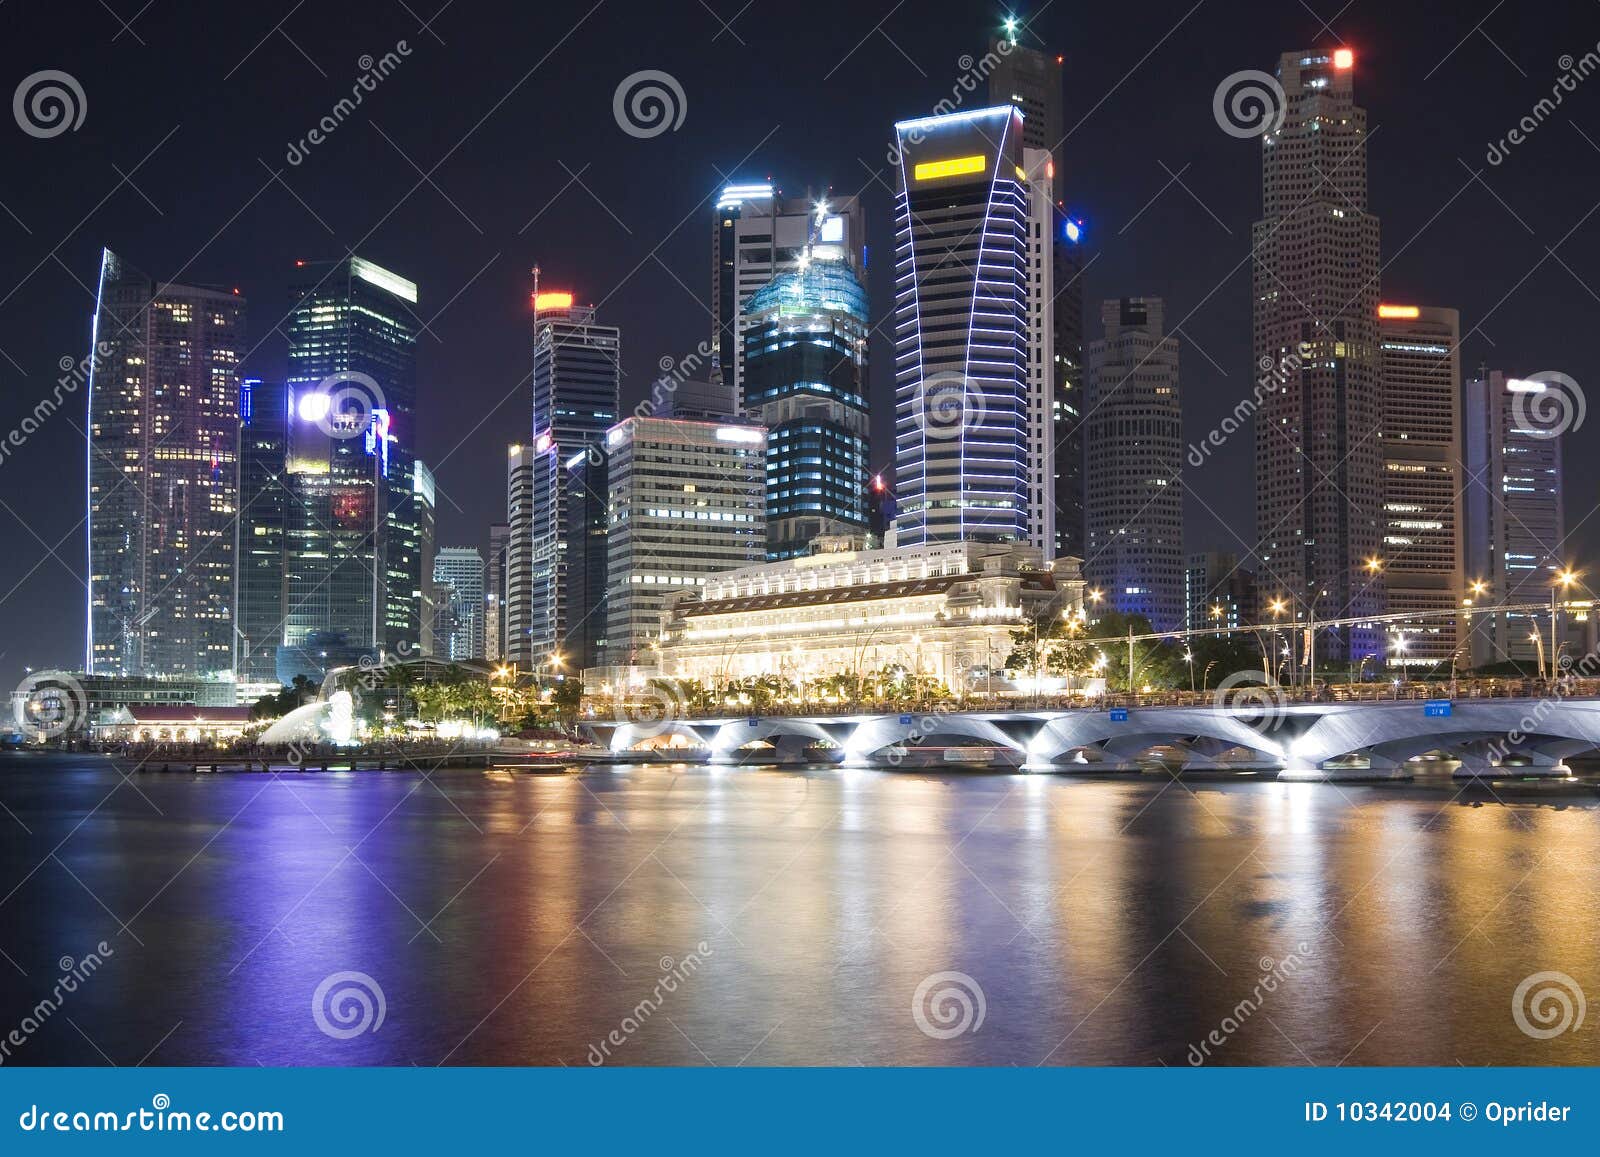 singapore city night view